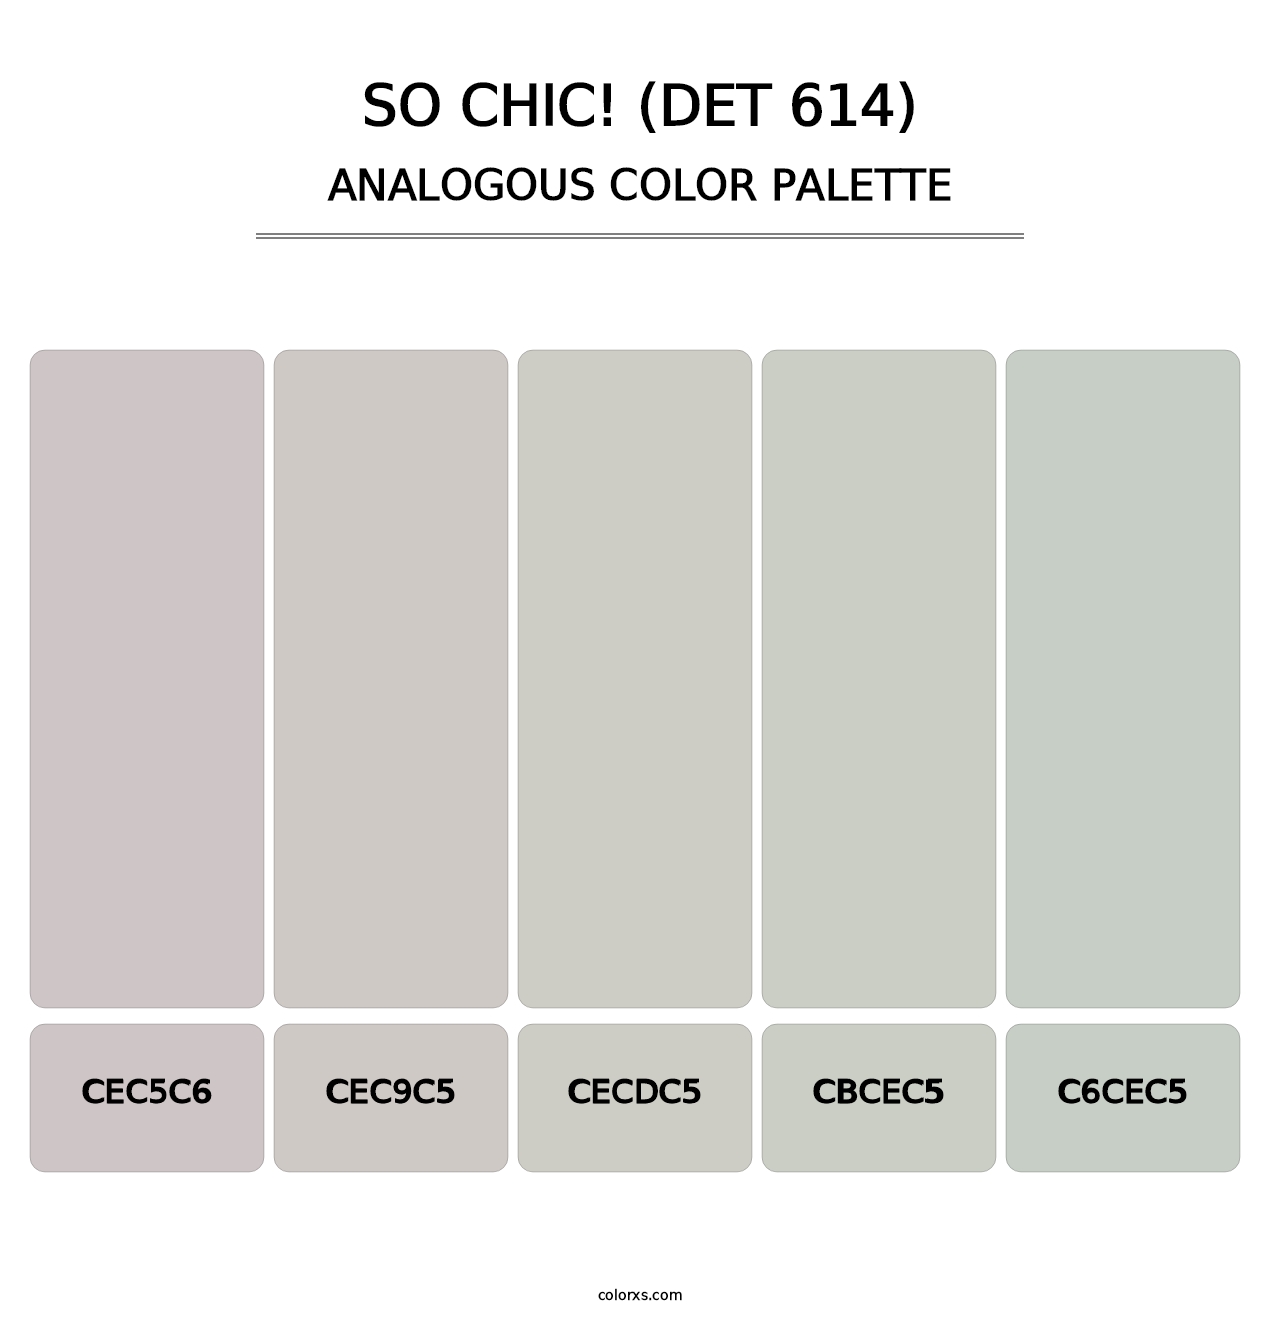 So Chic! (DET 614) - Analogous Color Palette